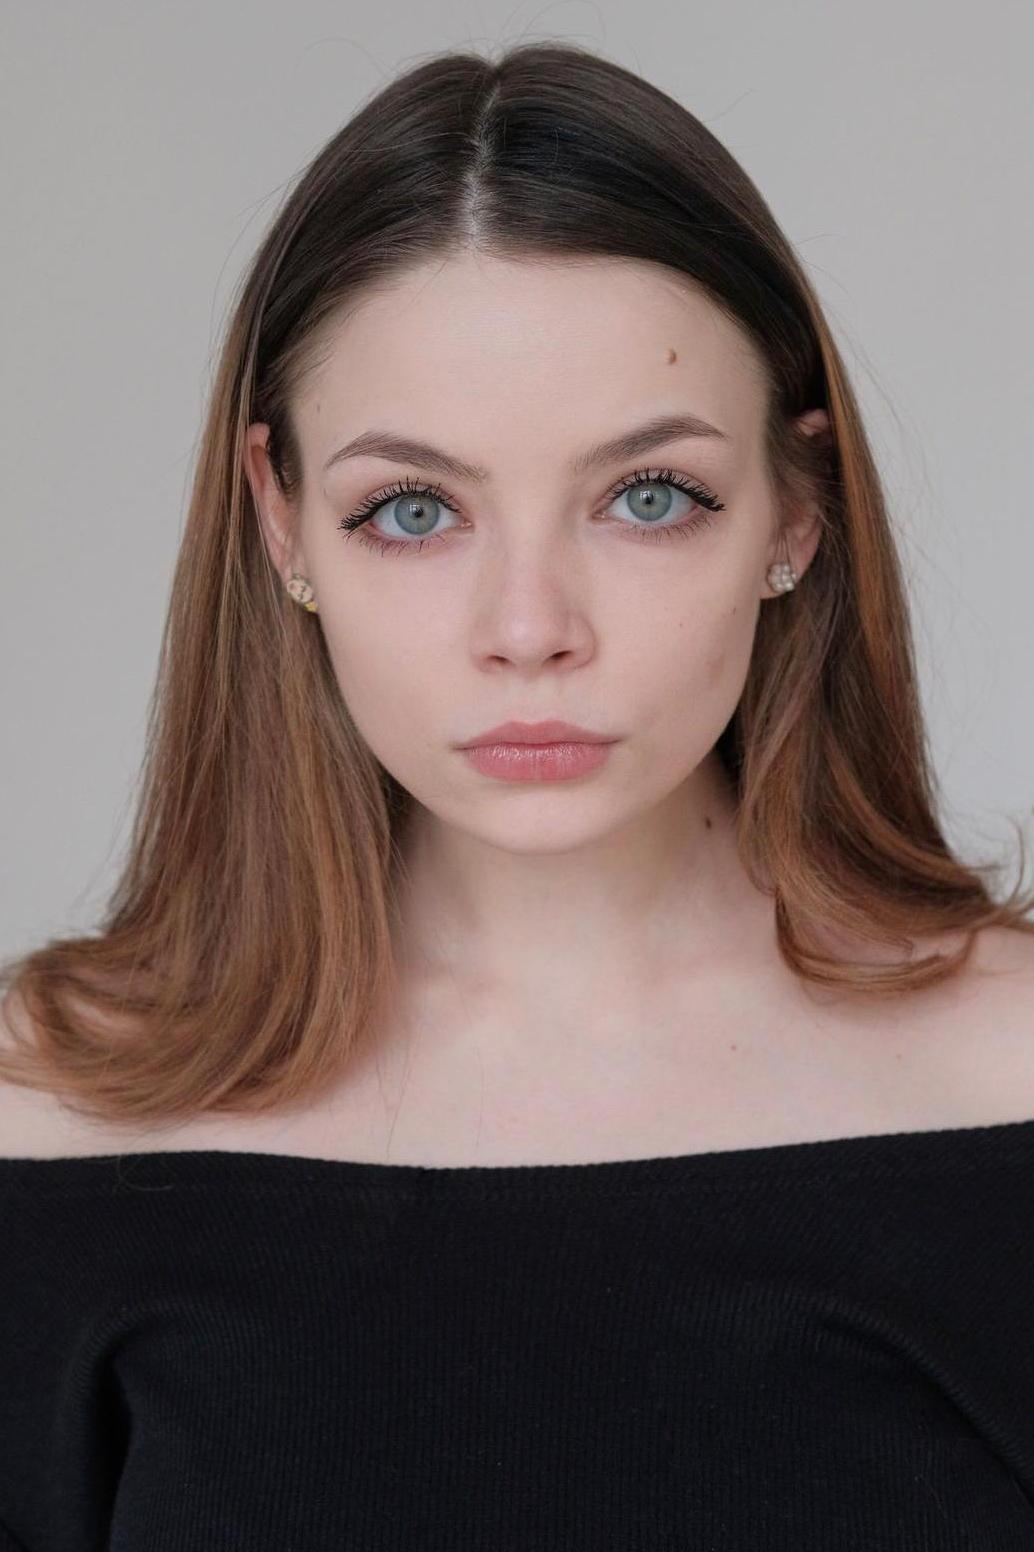 Ульяна Молдованова, 21, Москва. Актер театра и кино. Официальный сайт |  Kinolift